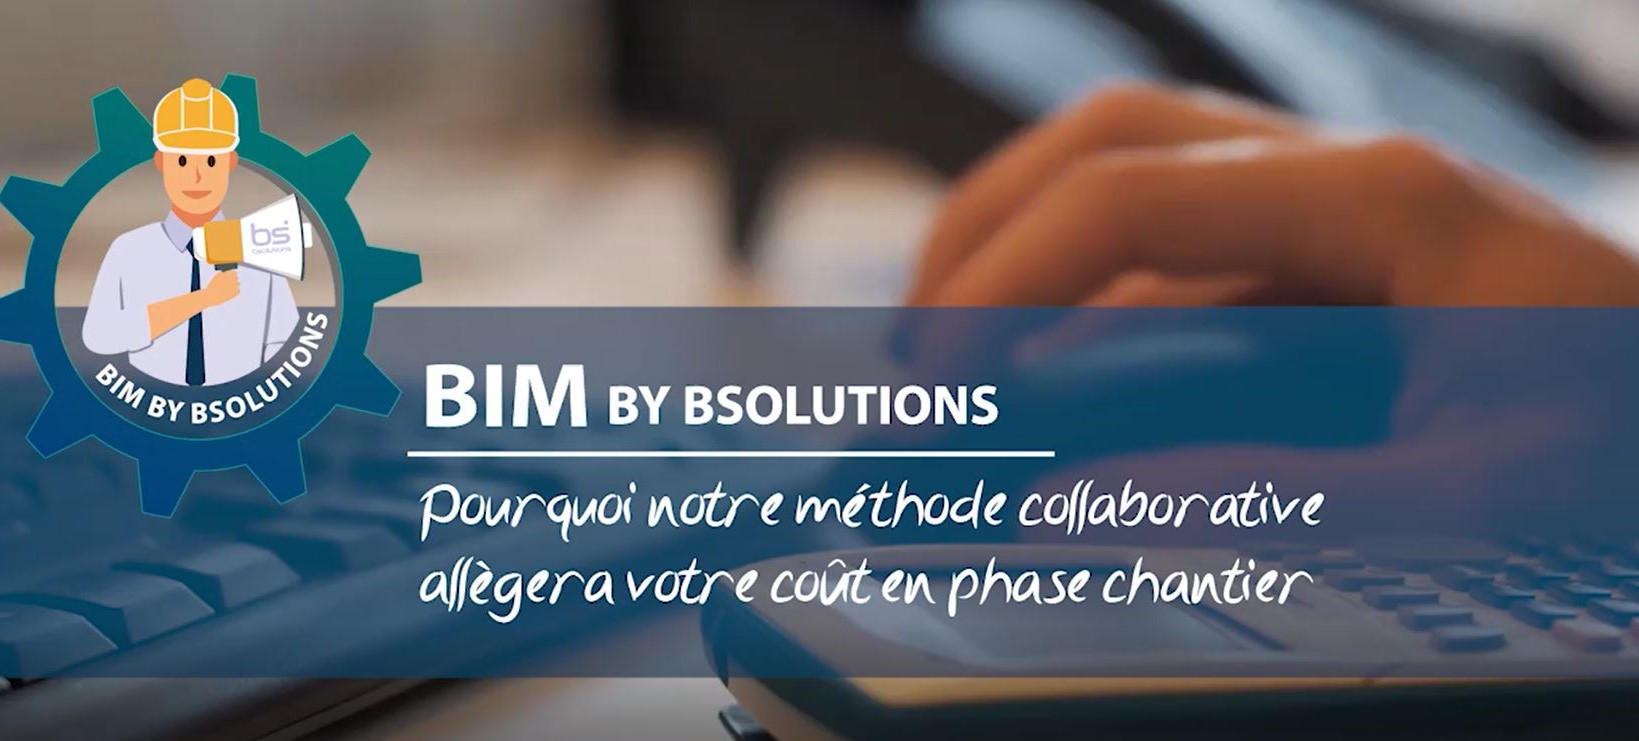 Le BIM by BSolutions Pourquoi notre méthode collaborative allégera